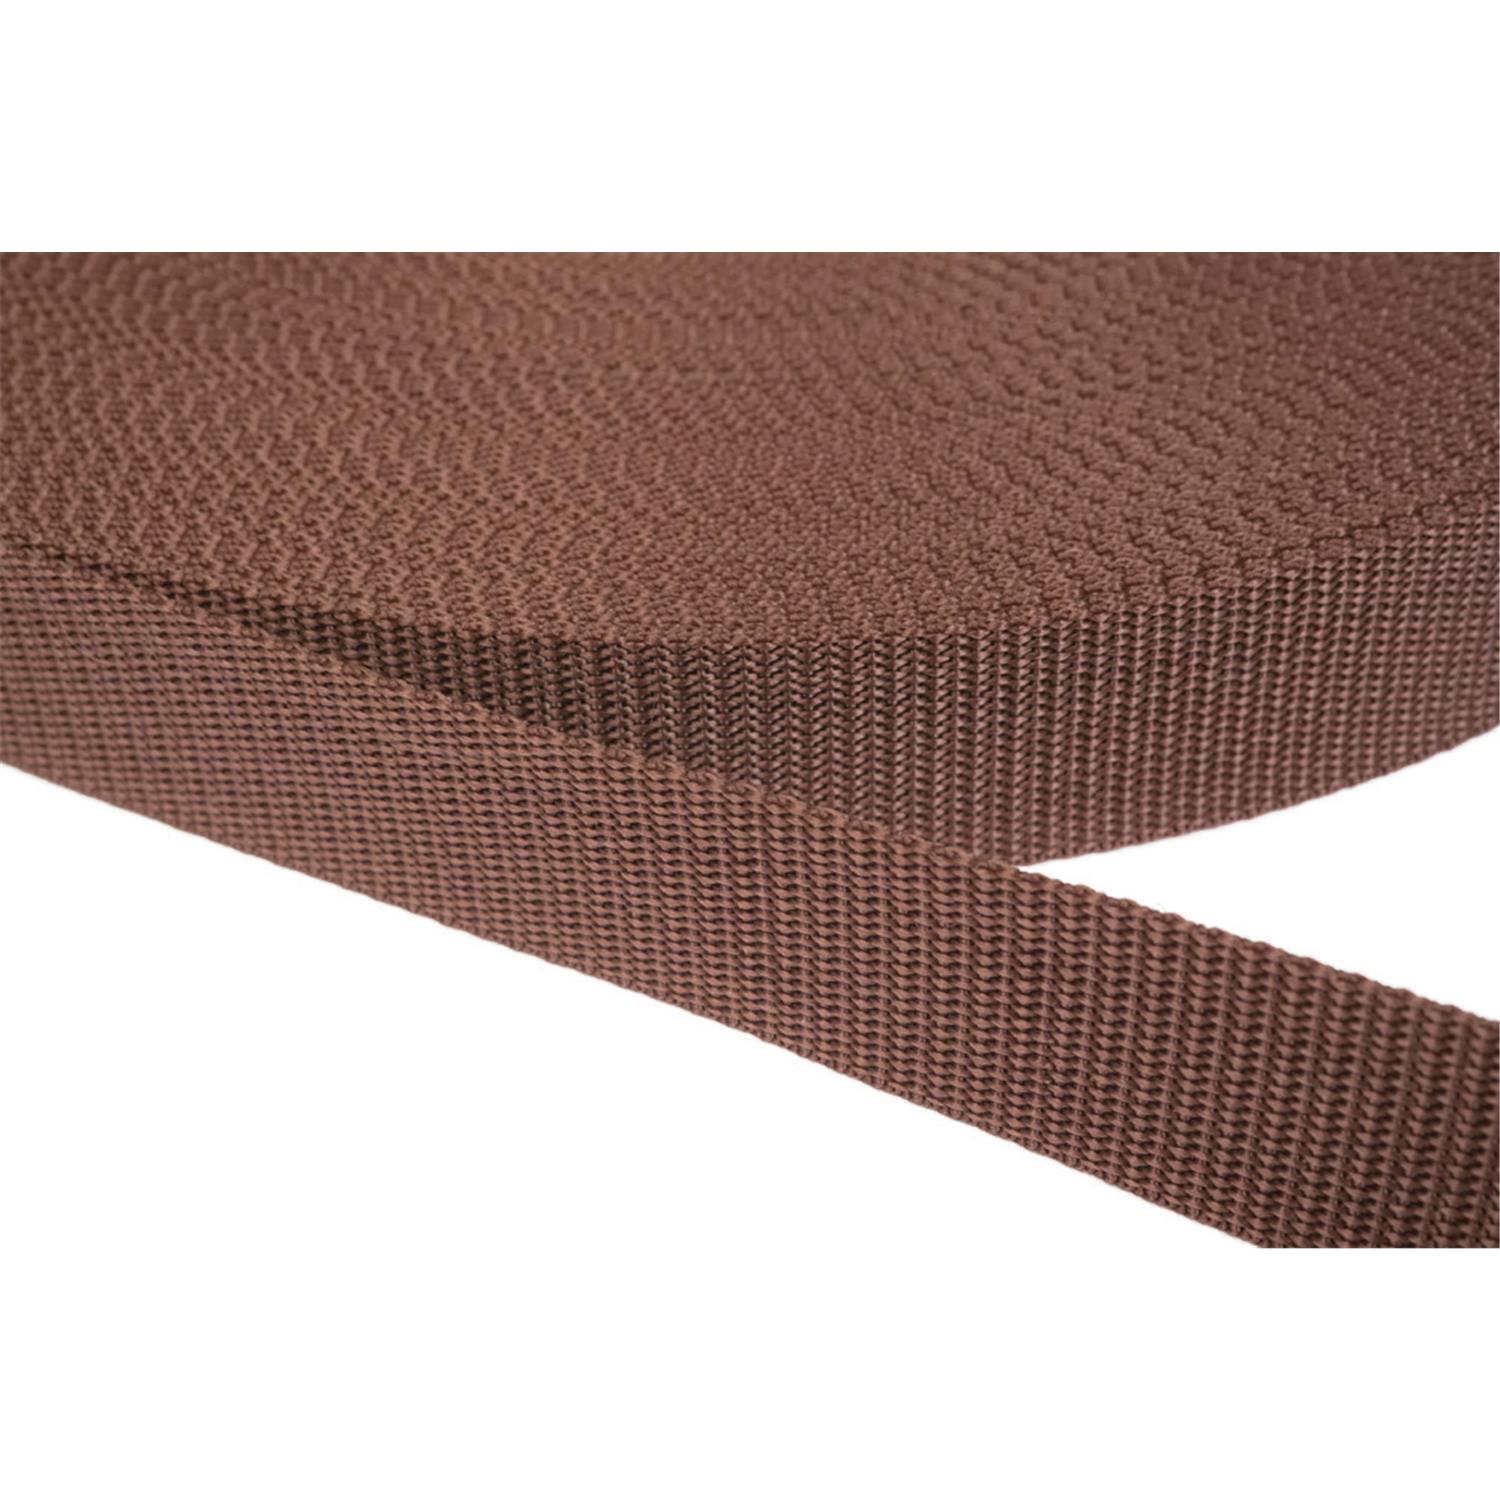 Gurtband 40mm breit aus Polypropylen in 41 Farben 07 - braun 12 Meter